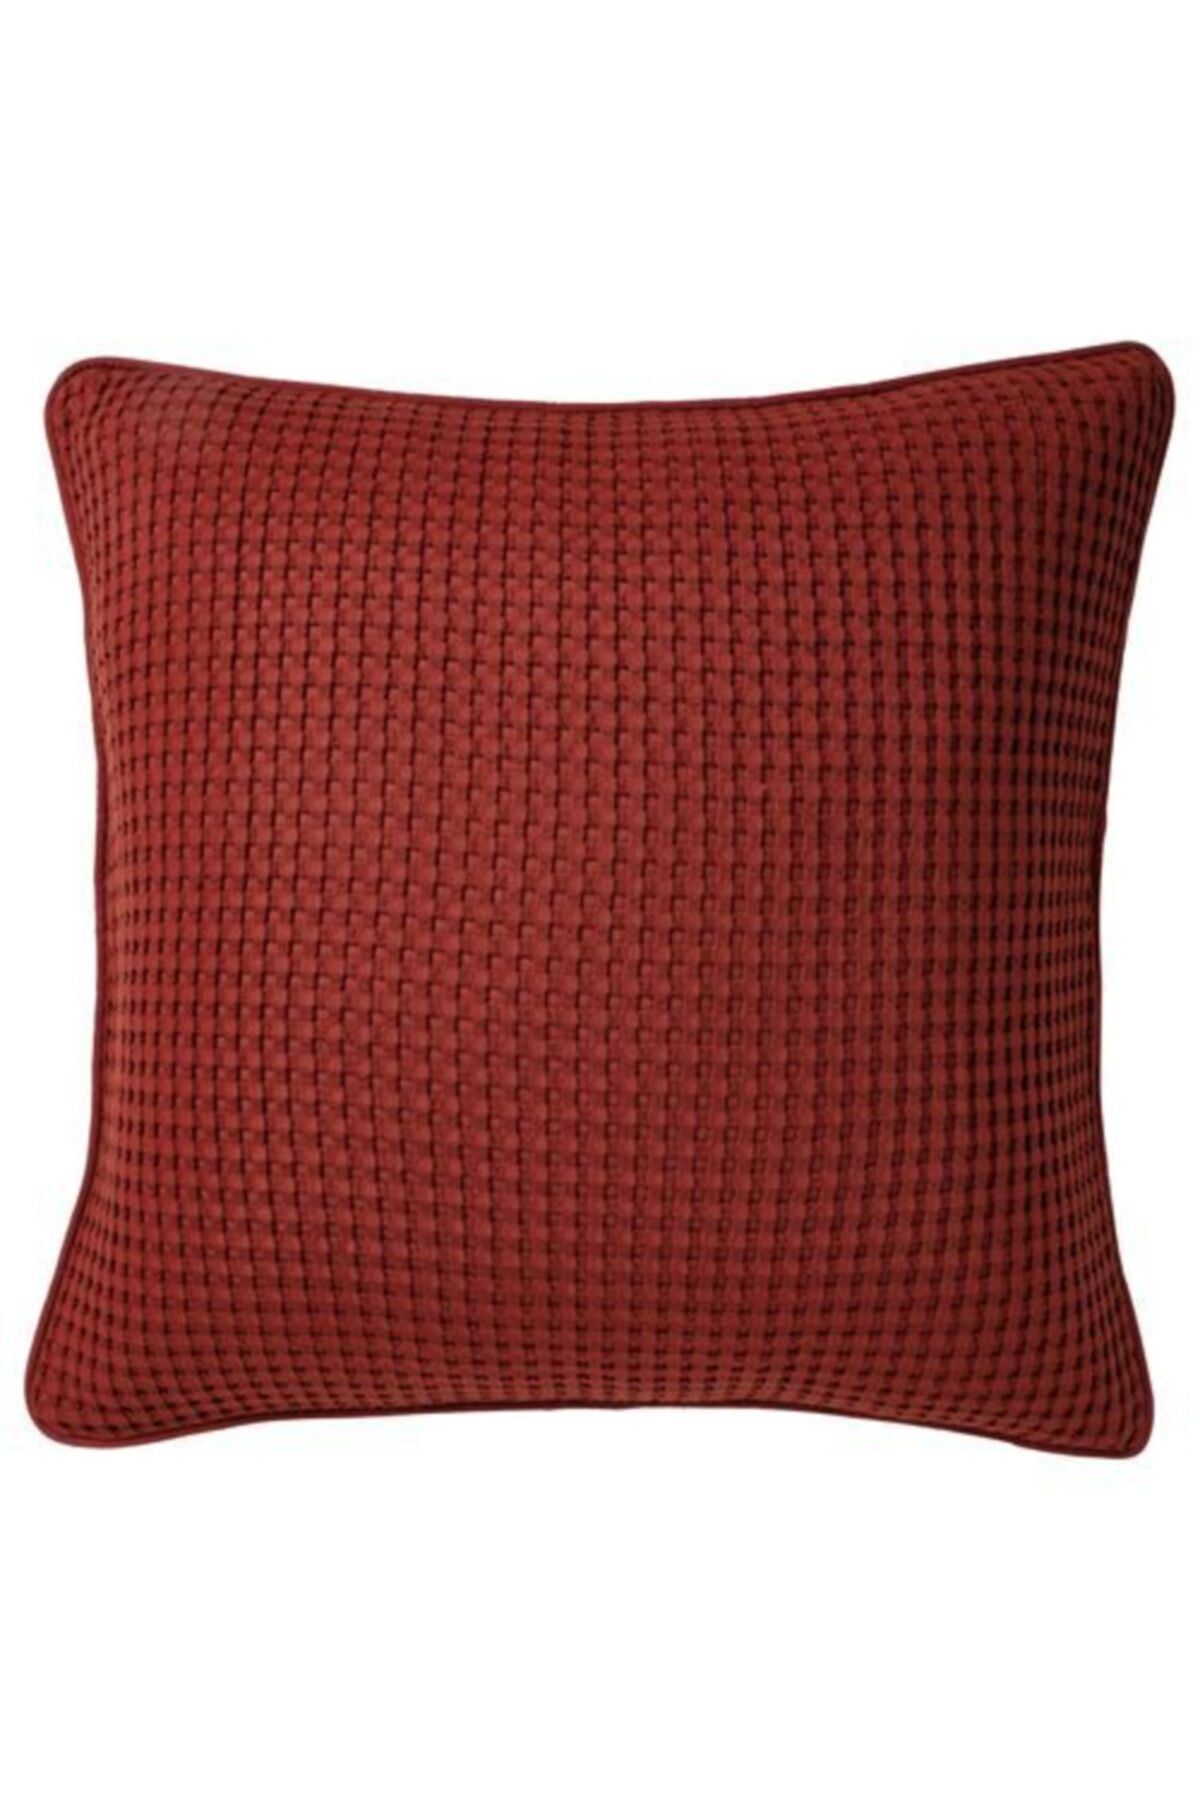 IKEA Minder-kırlent Kılıfı, Meridyendukkan Kırmızı Renk 50x50 Cm %100 Pamuk Ev Dekorasyon-kılıf